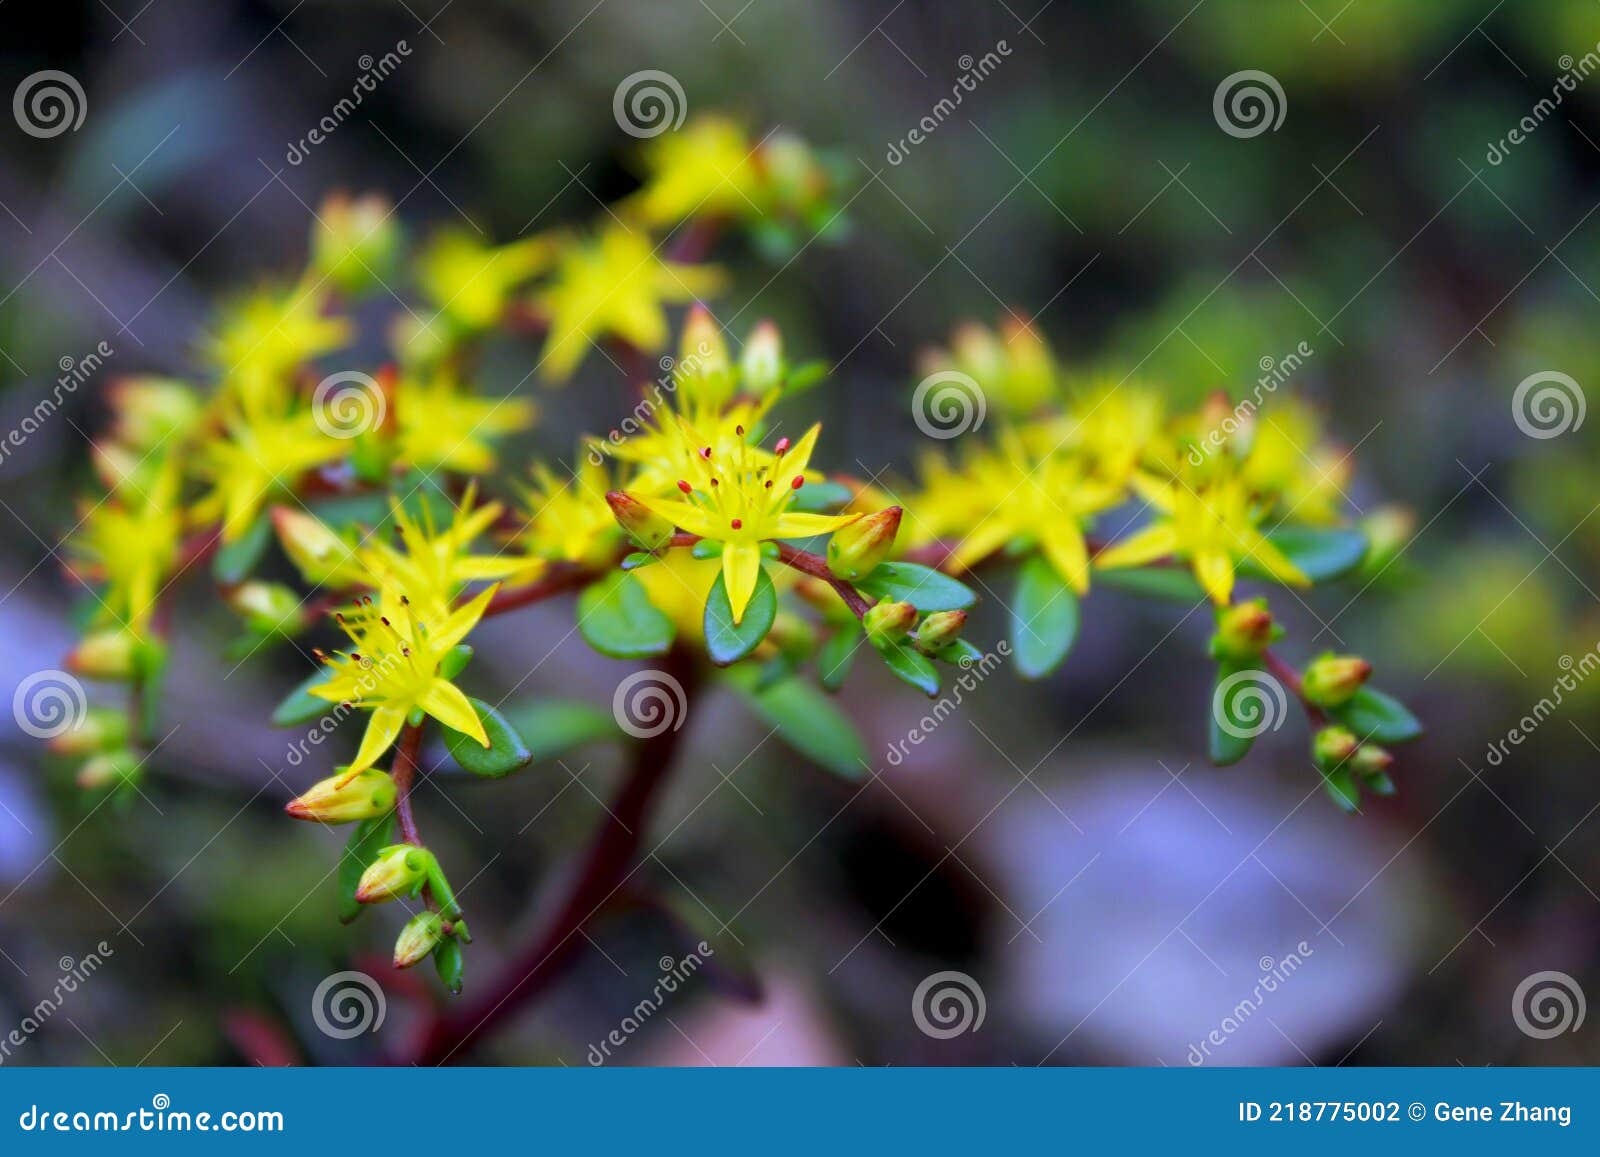 Yellow Flowers of Chinese Woodland Stonecrop, Sedum Emarginatum Stock ...